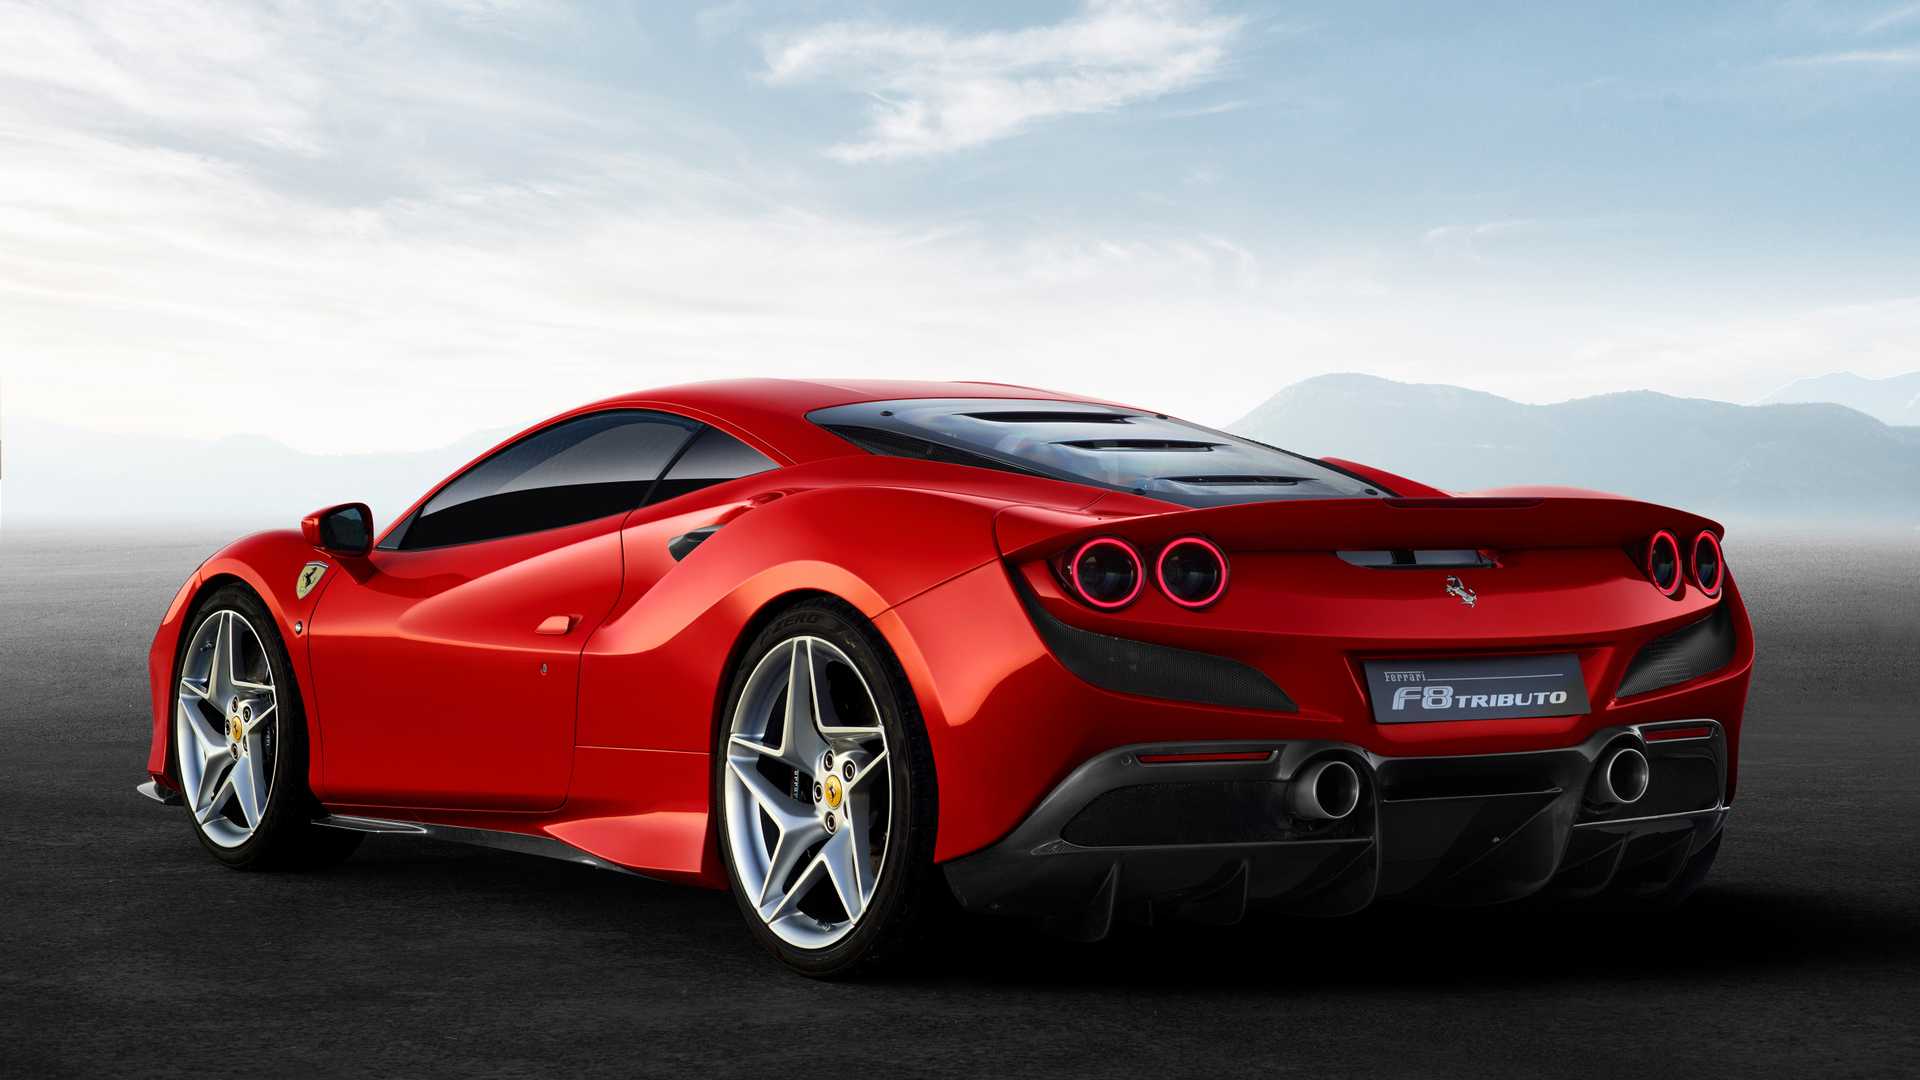 UPDATE: Ferrari SF90 Stradale Hybrid Leaks Ahead of Debut, Looks